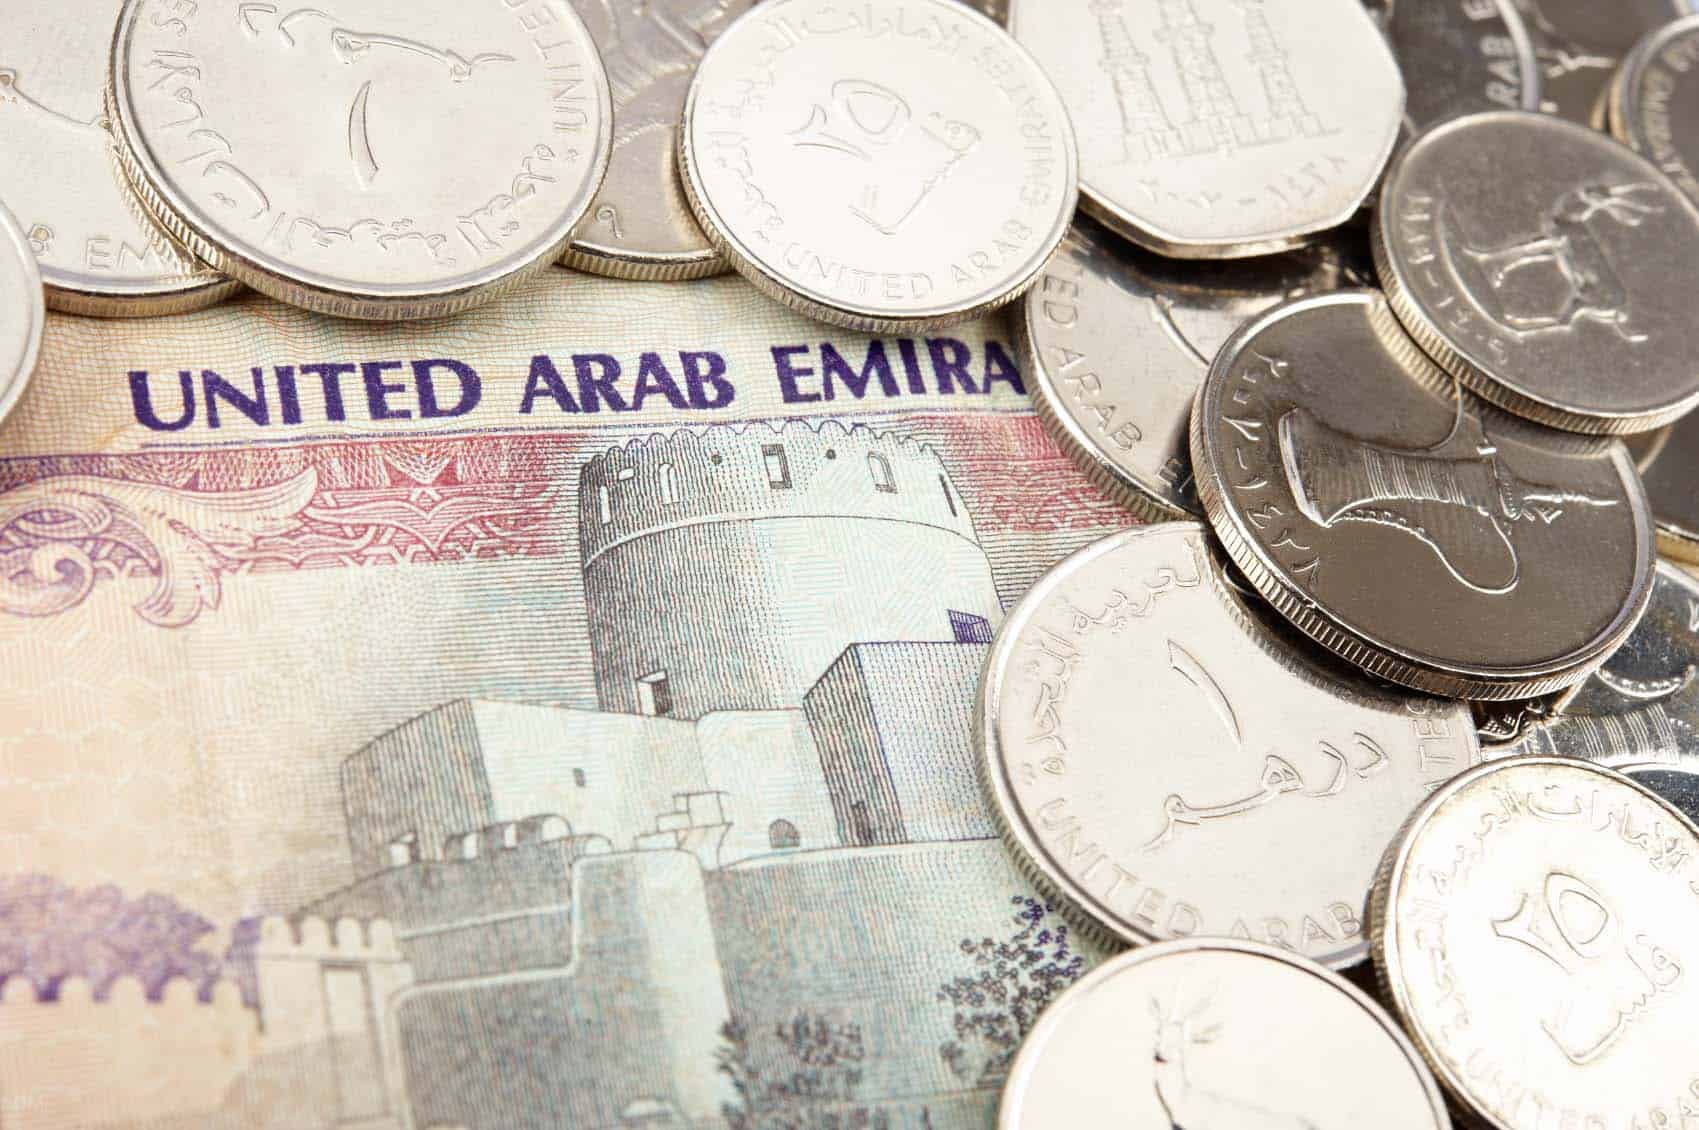 قیمت درهم امارات آرامش در بازار ارز و عقب افتادن ایران از امارات و ترکیه ایتی مایتی